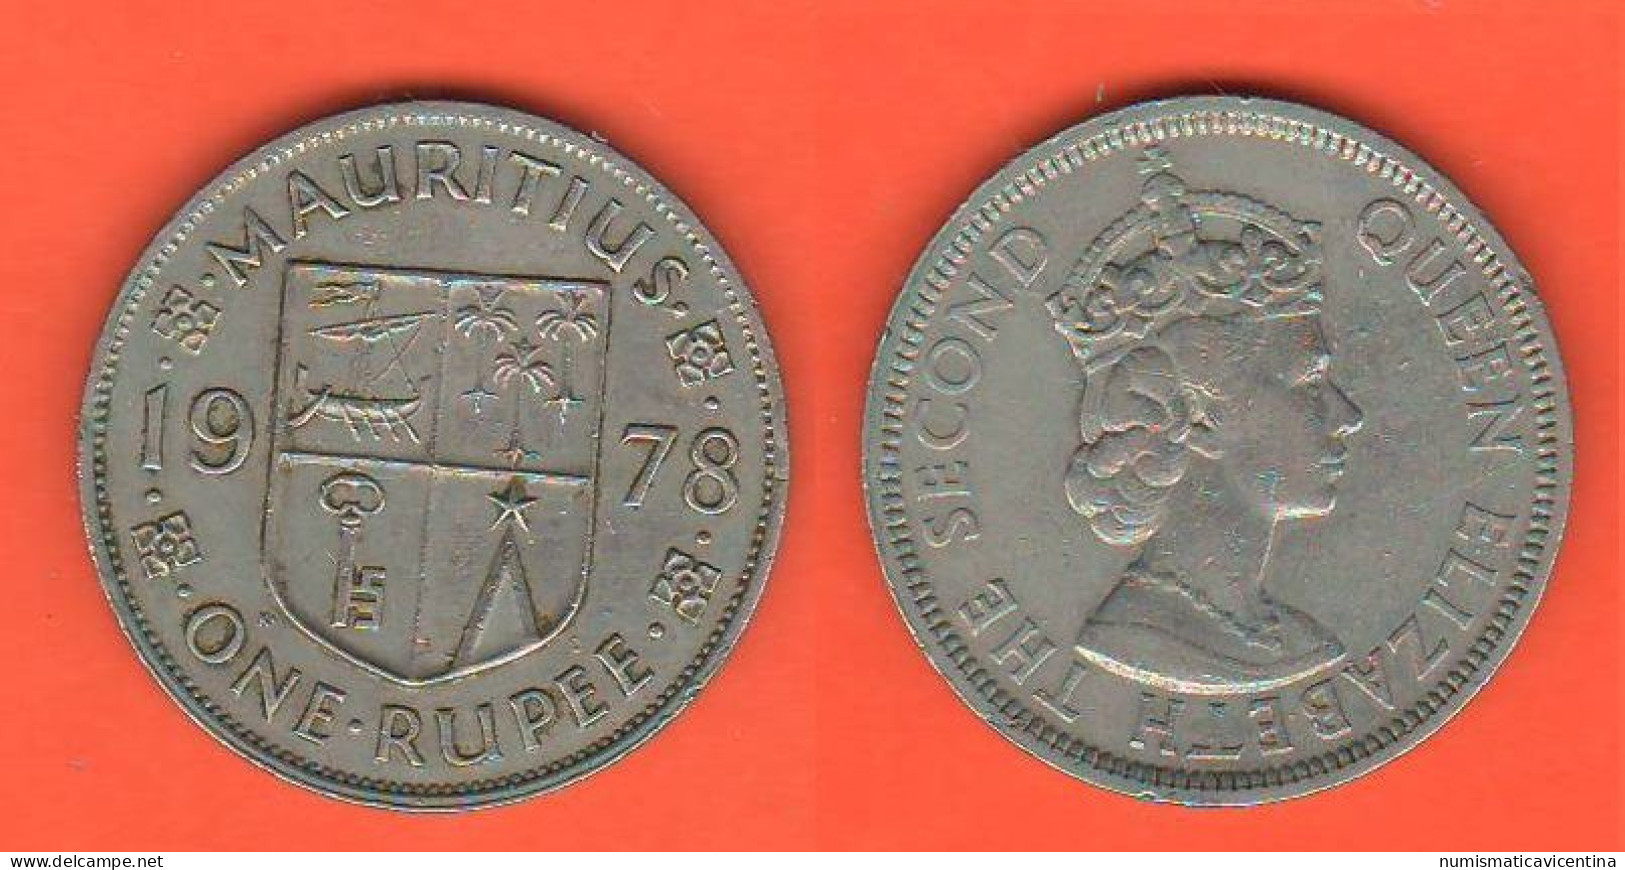 Mauritius One Rupee 1978 Nickel Coin Queen Elizabeth II° - Mauritius